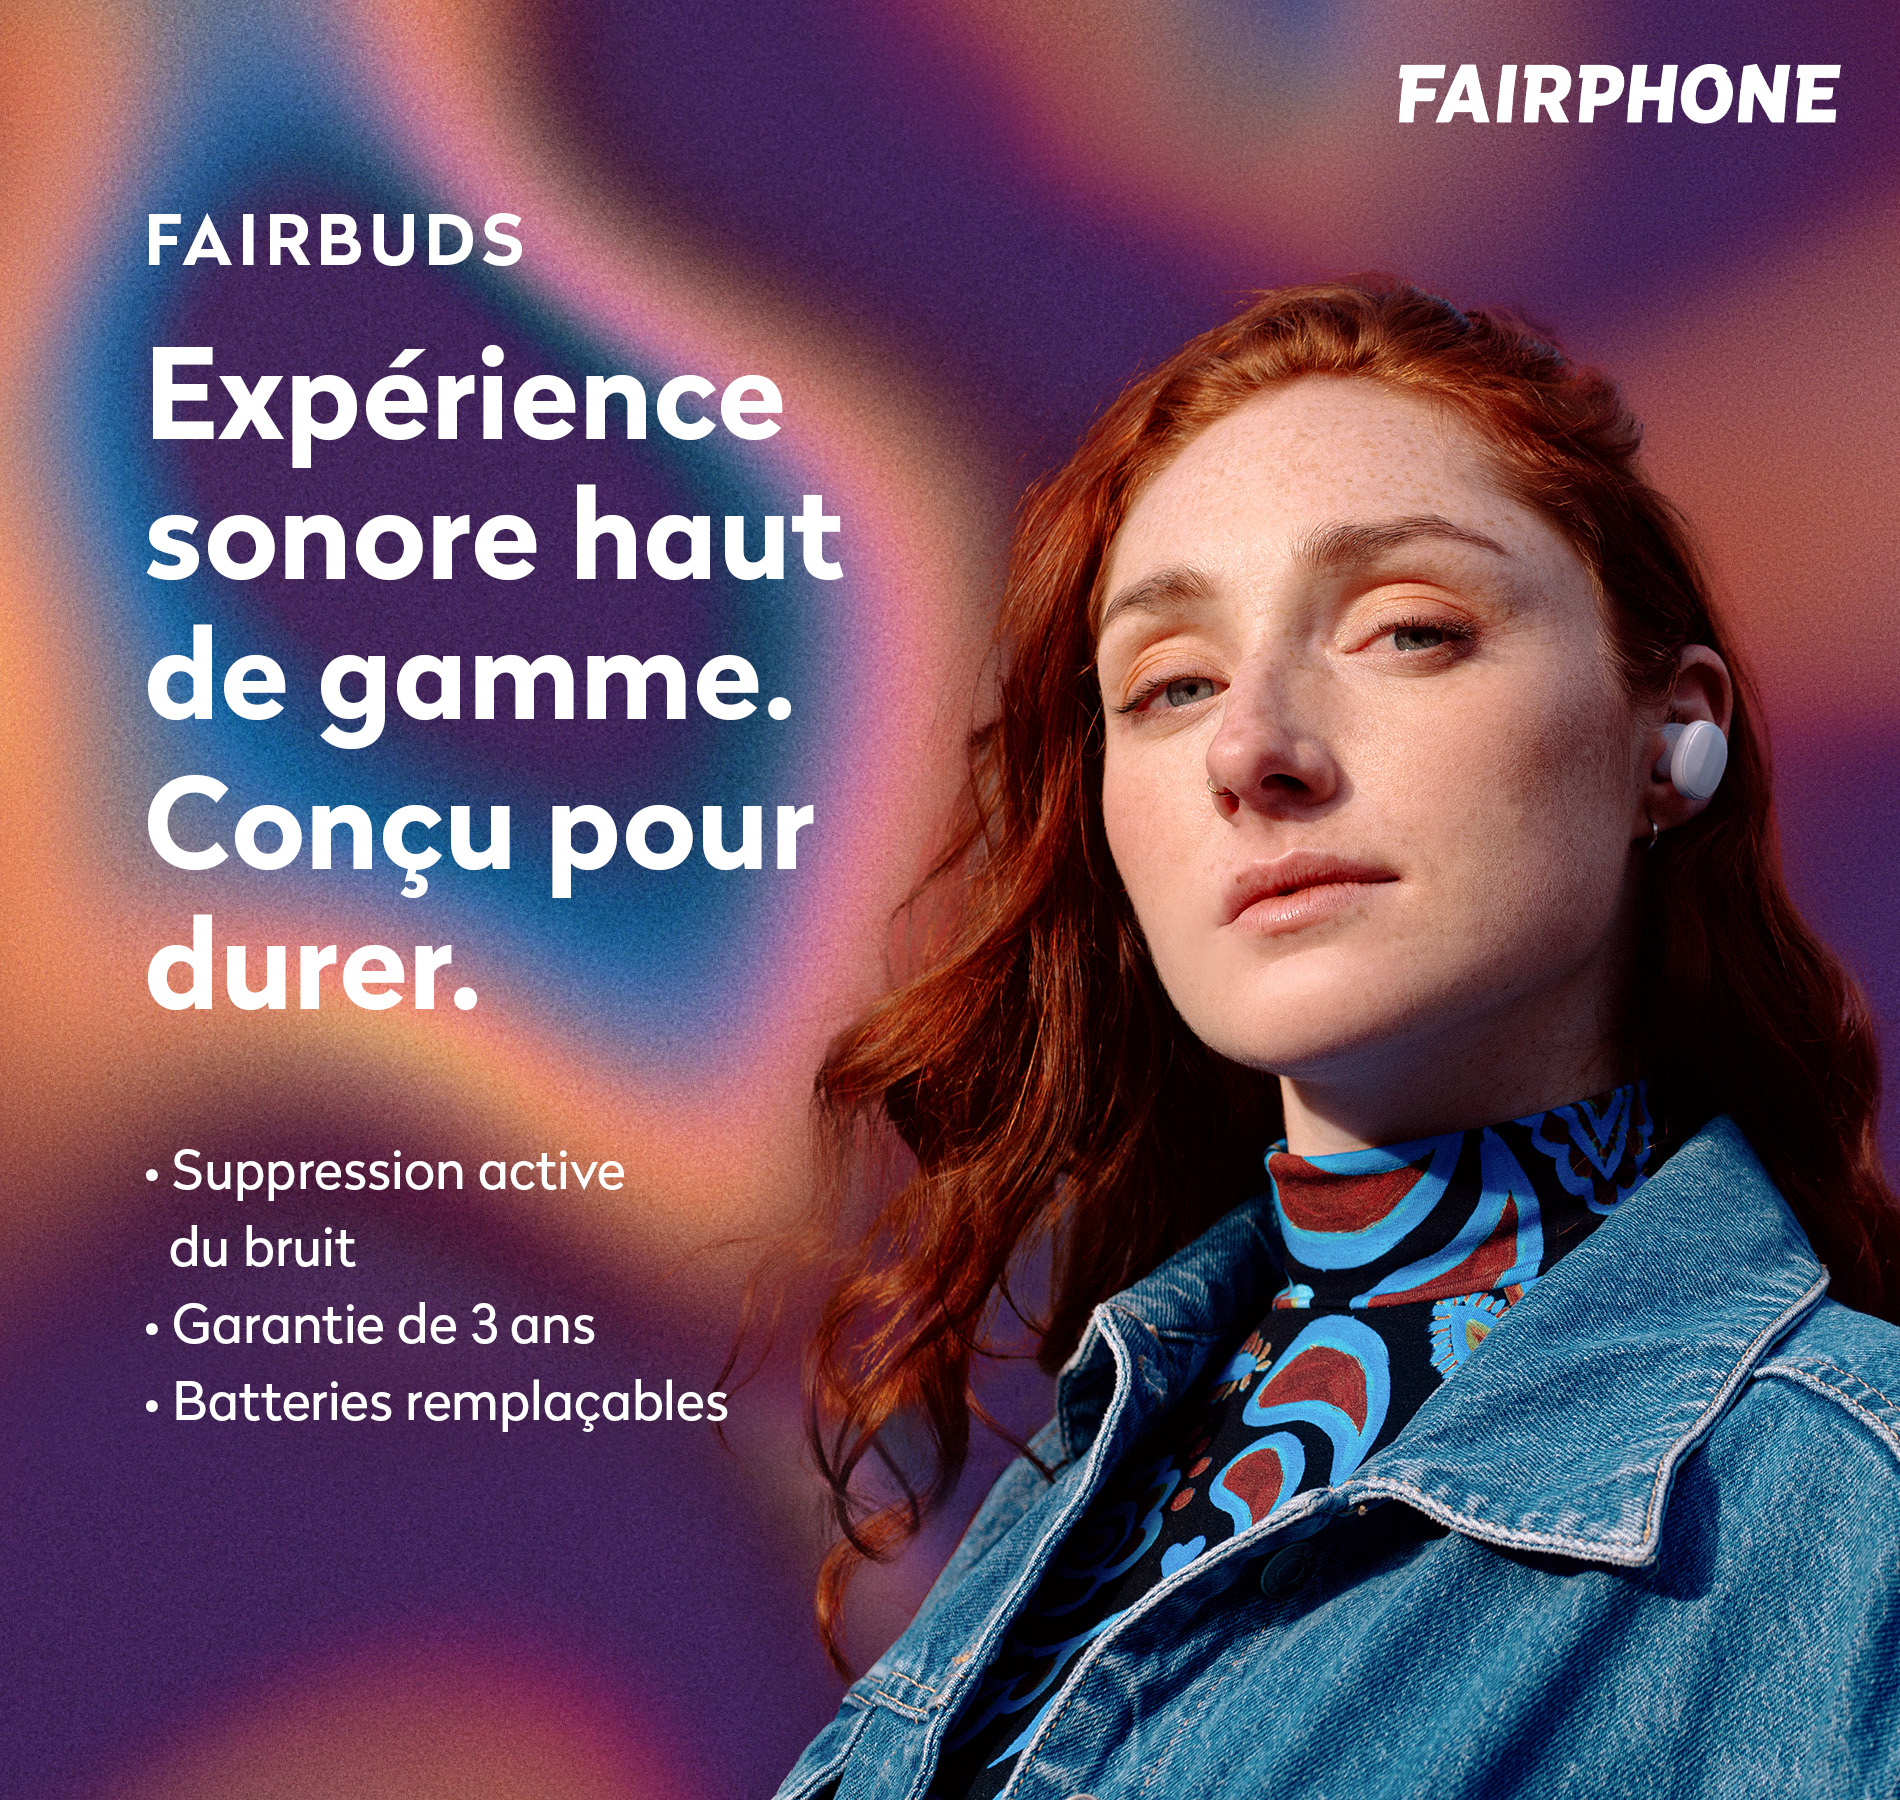 Fairbuds